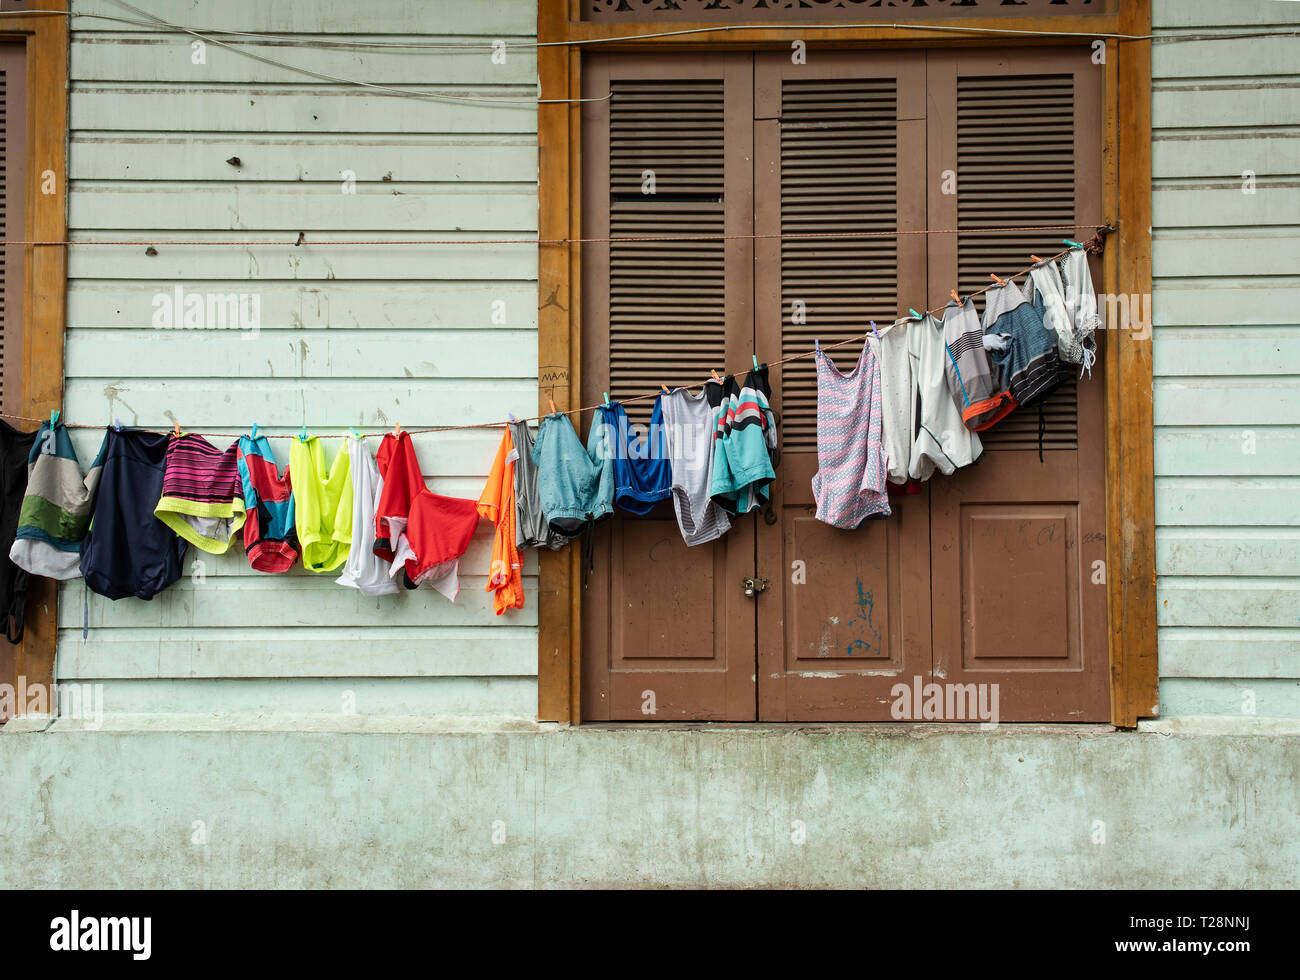 Le séchage des vêtements sur une corde à l'extérieur d'un vieux bâtiment résidentiel. Casco Viejo (vieille ville), la ville historique de la ville de Panama, Panama. Oct 2018 Banque D'Images